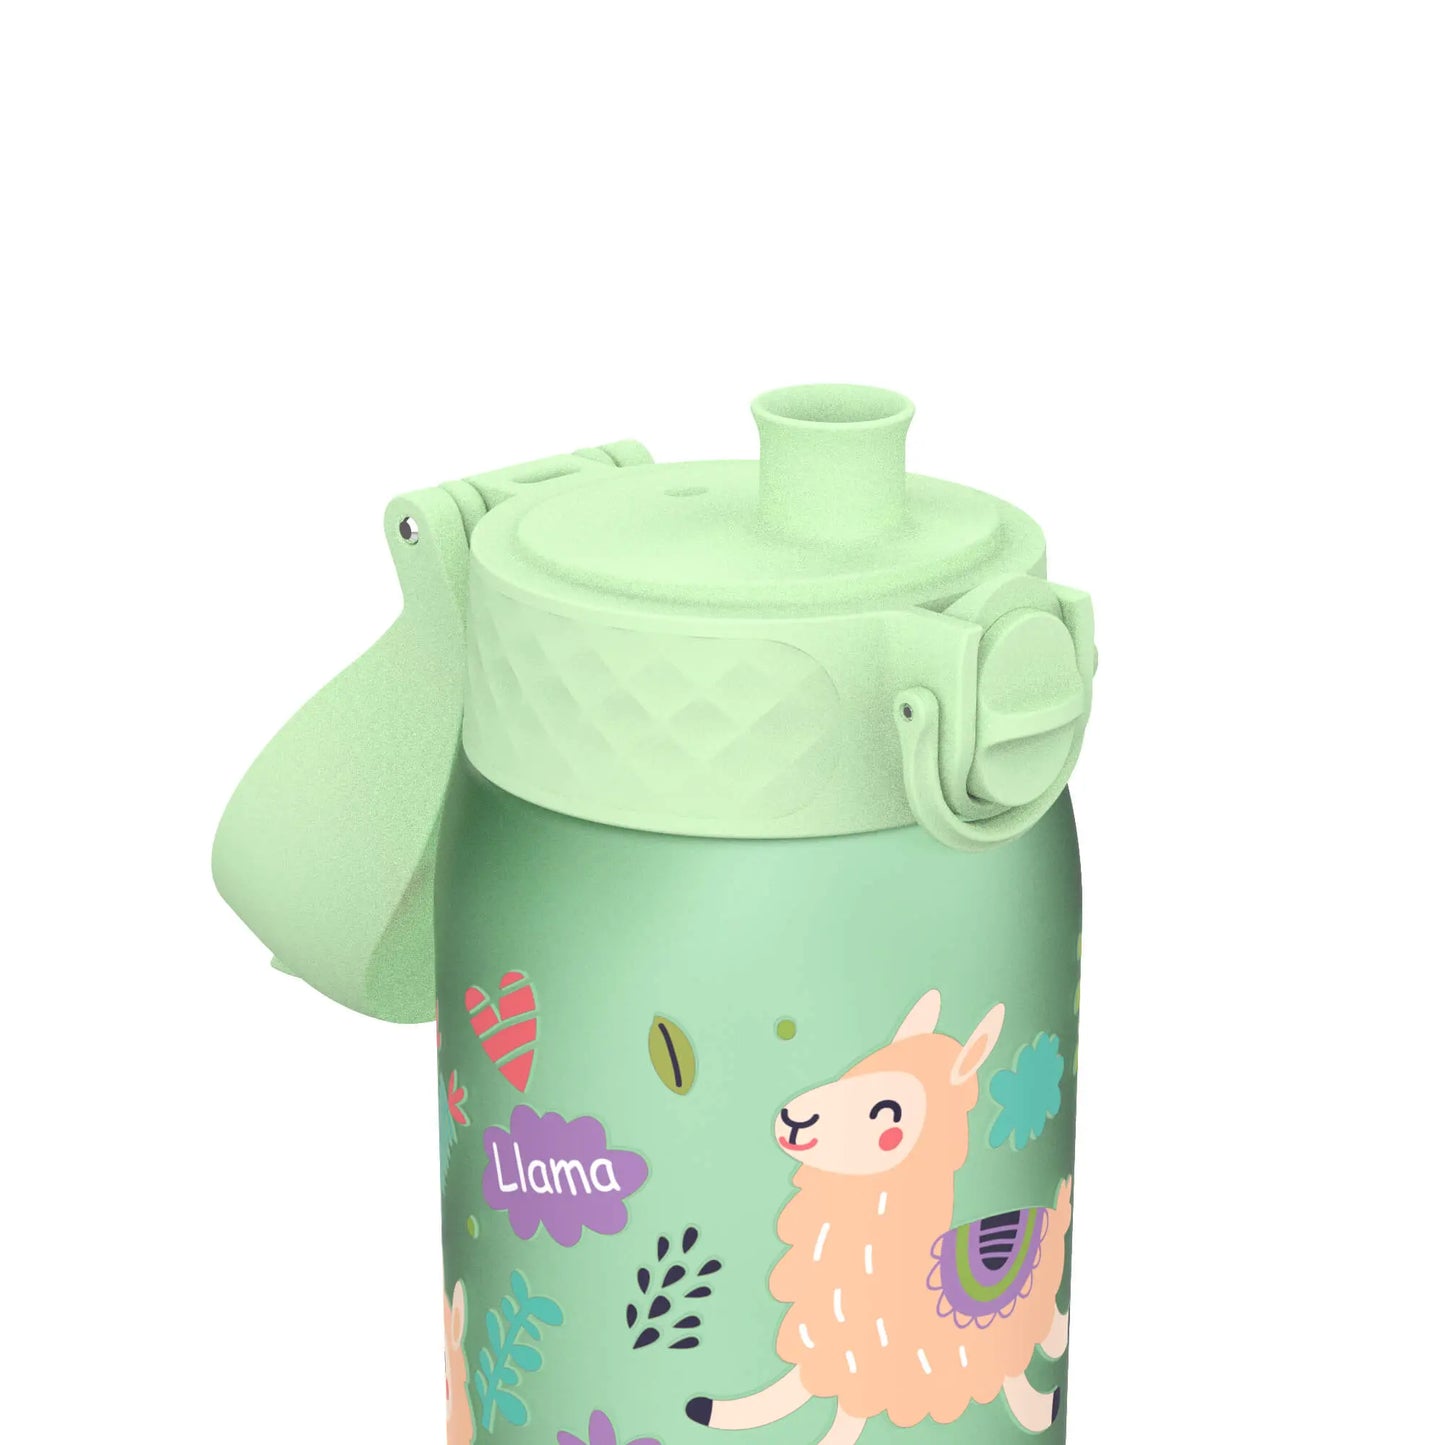 Leak Proof Kids Water Bottle, Recyclon™, Llamas, 350ml (12oz) Ion8